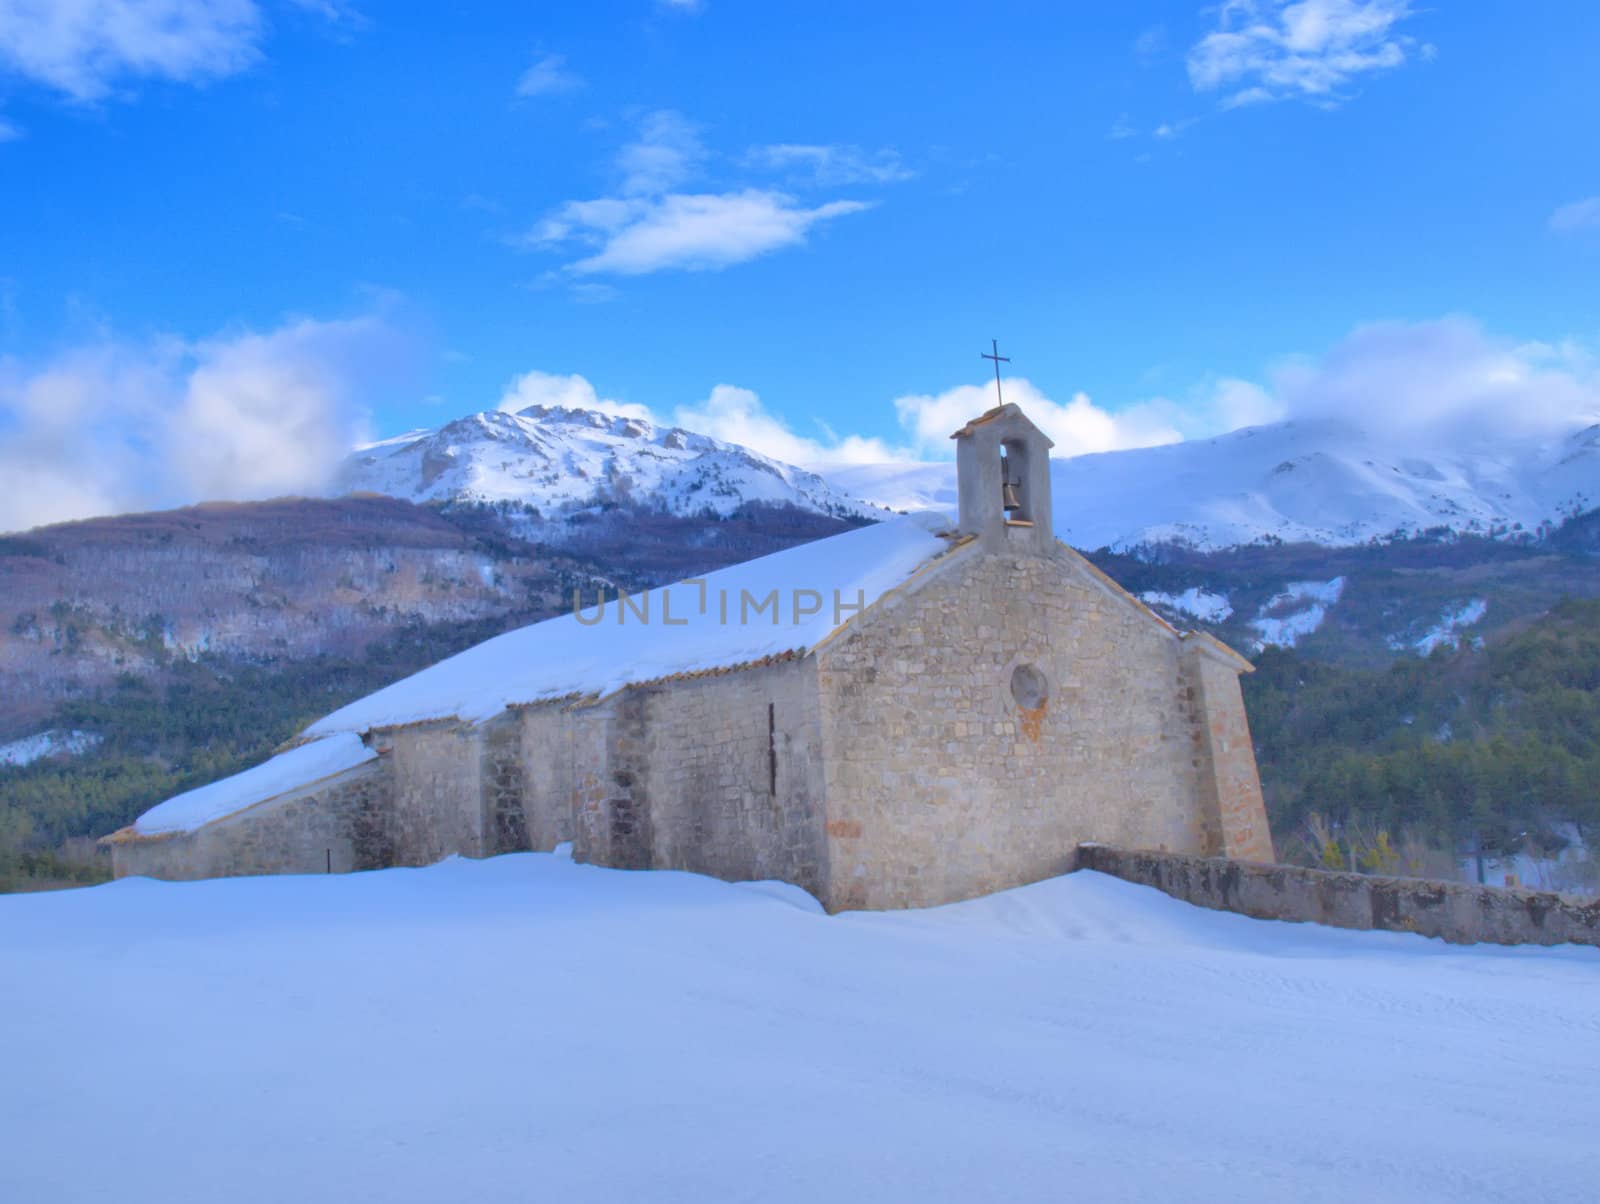 Provence chapel in a snowy landscape by jbouzou